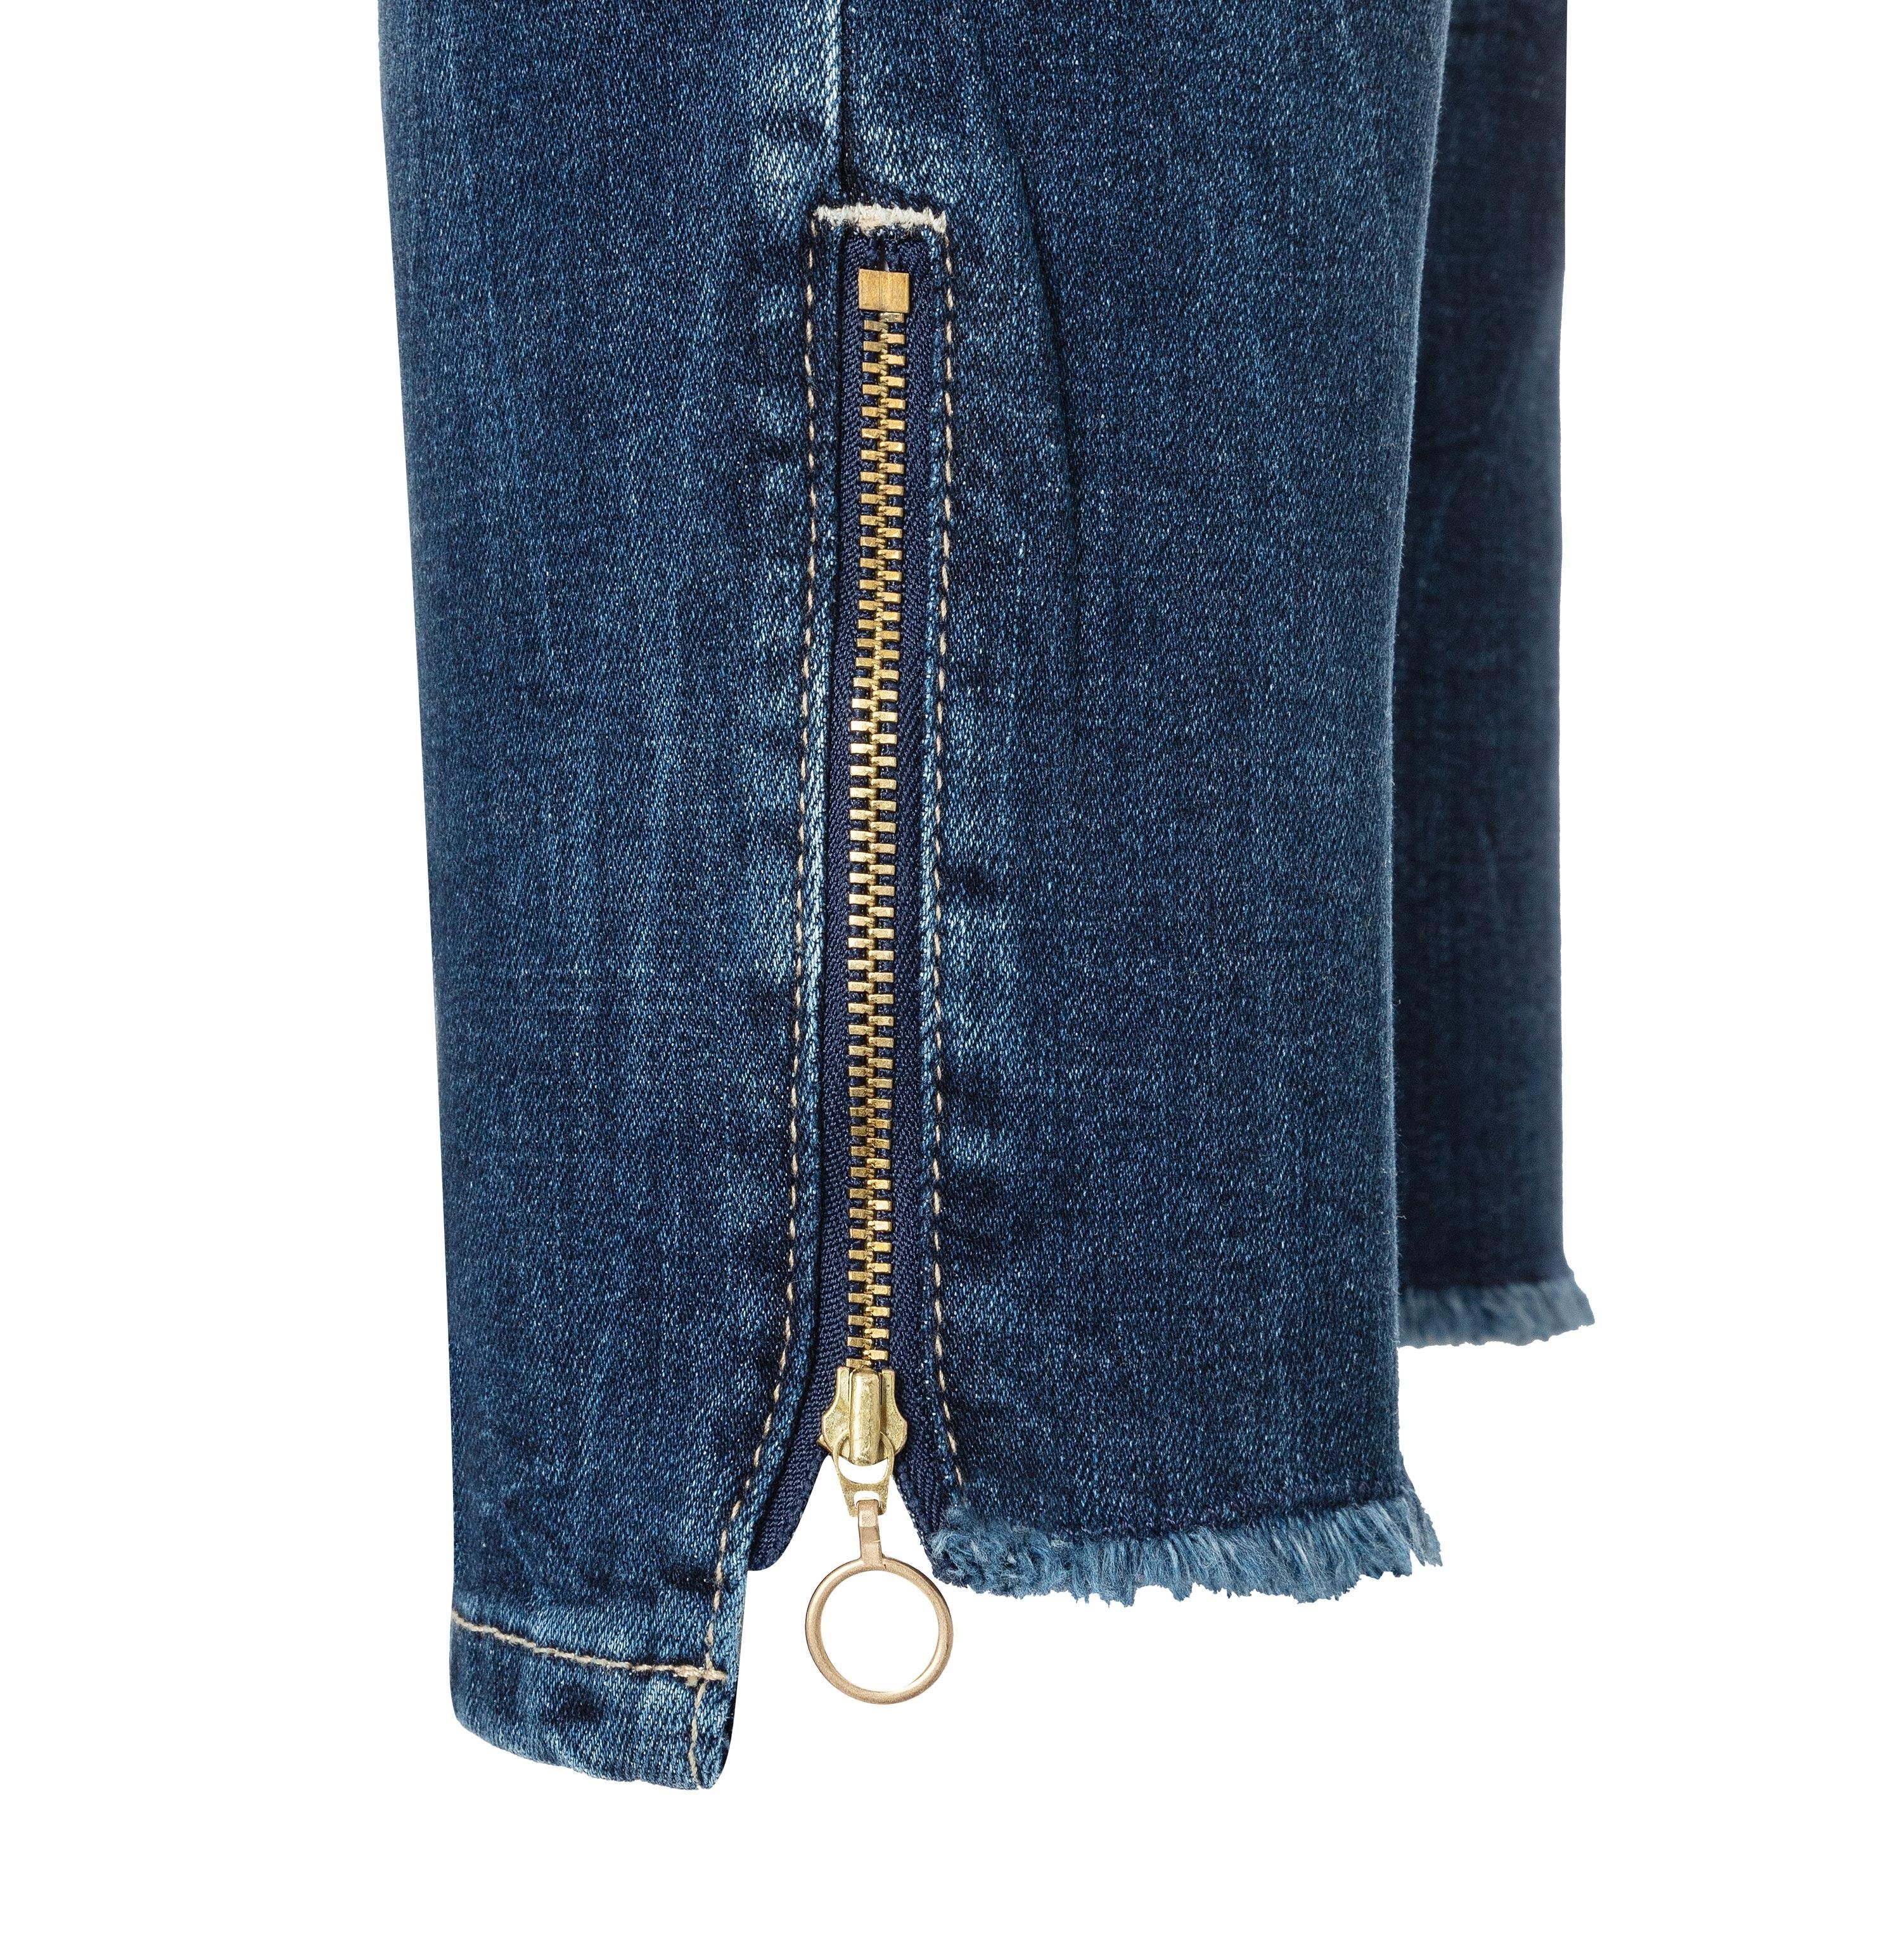 SLIM Stretch-Jeans RICH blue MAC MAC dark wash 5755-90-0389L D671 net